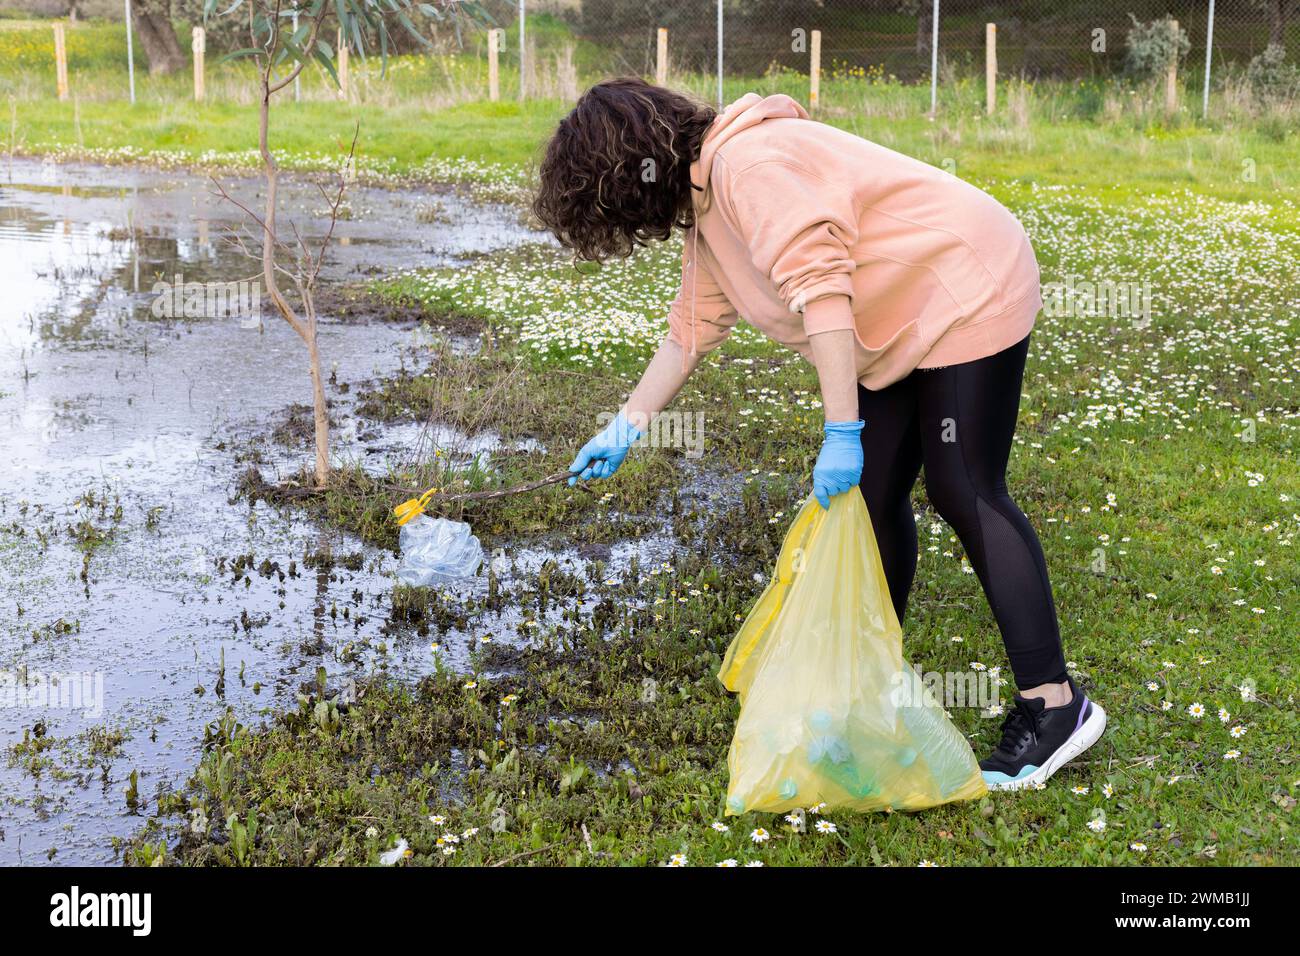 Une jeune femme recycle une bouteille en plastique d'un lac lors d'une journée de recyclage bénévole. Concept recyclage, bénévolat, aménagement paysager, environnement Banque D'Images